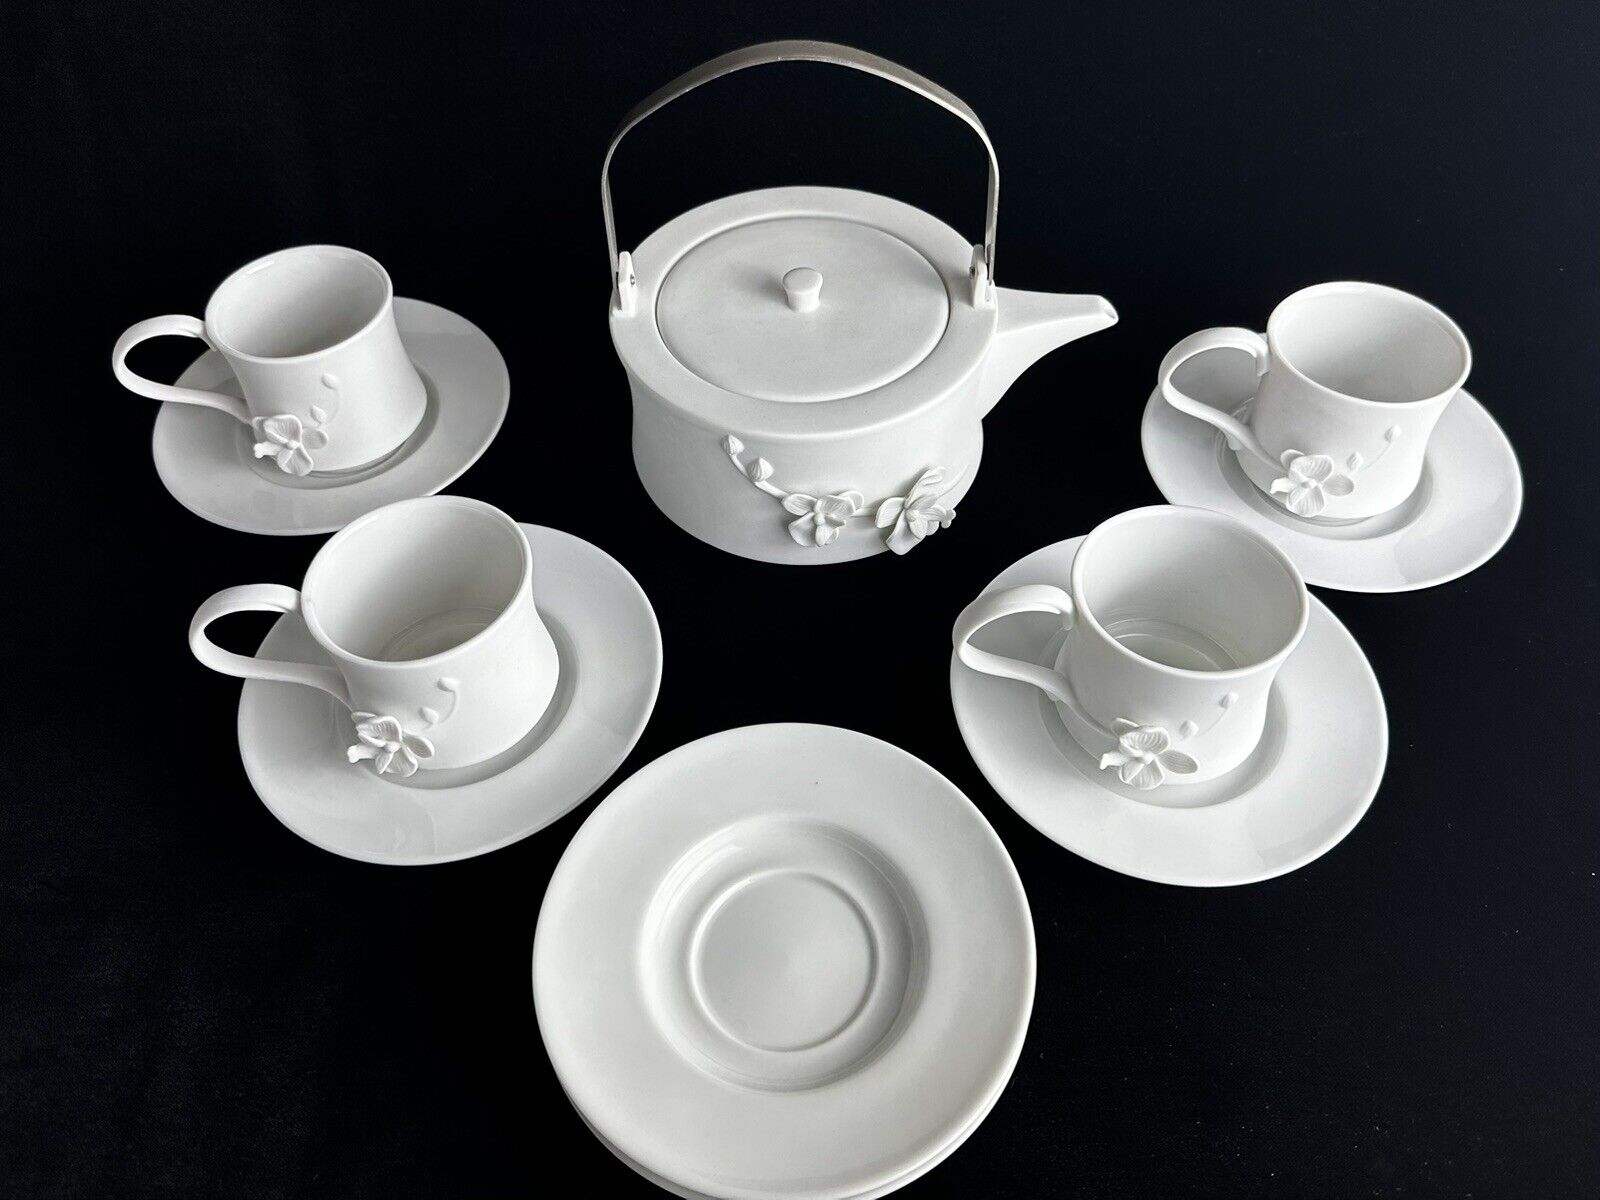 Teavana Orchid Tea Set Bisque Porcelain Tea Pot, Cup, Saucers - CHECK Condition